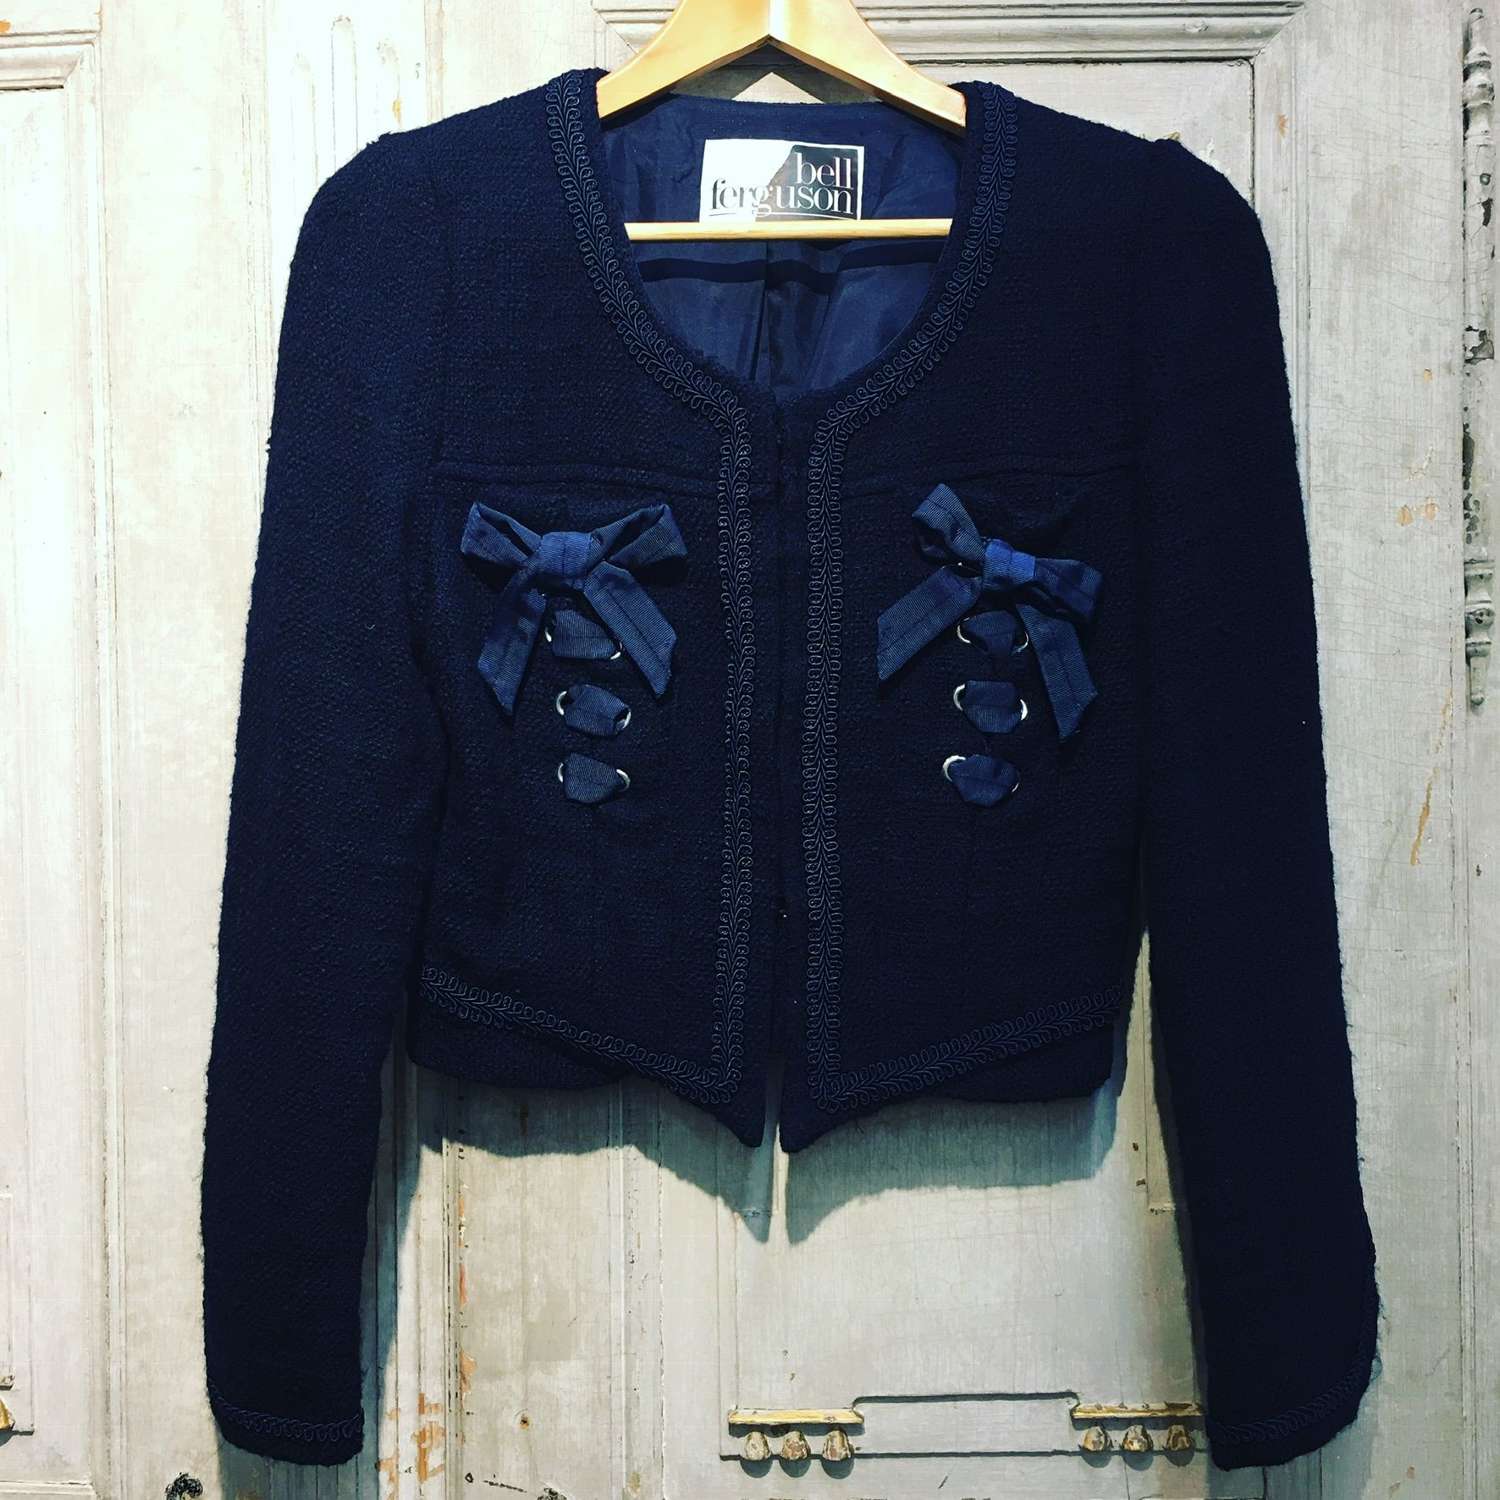 Blue wool Chanel style jacket by Belle Ferguson